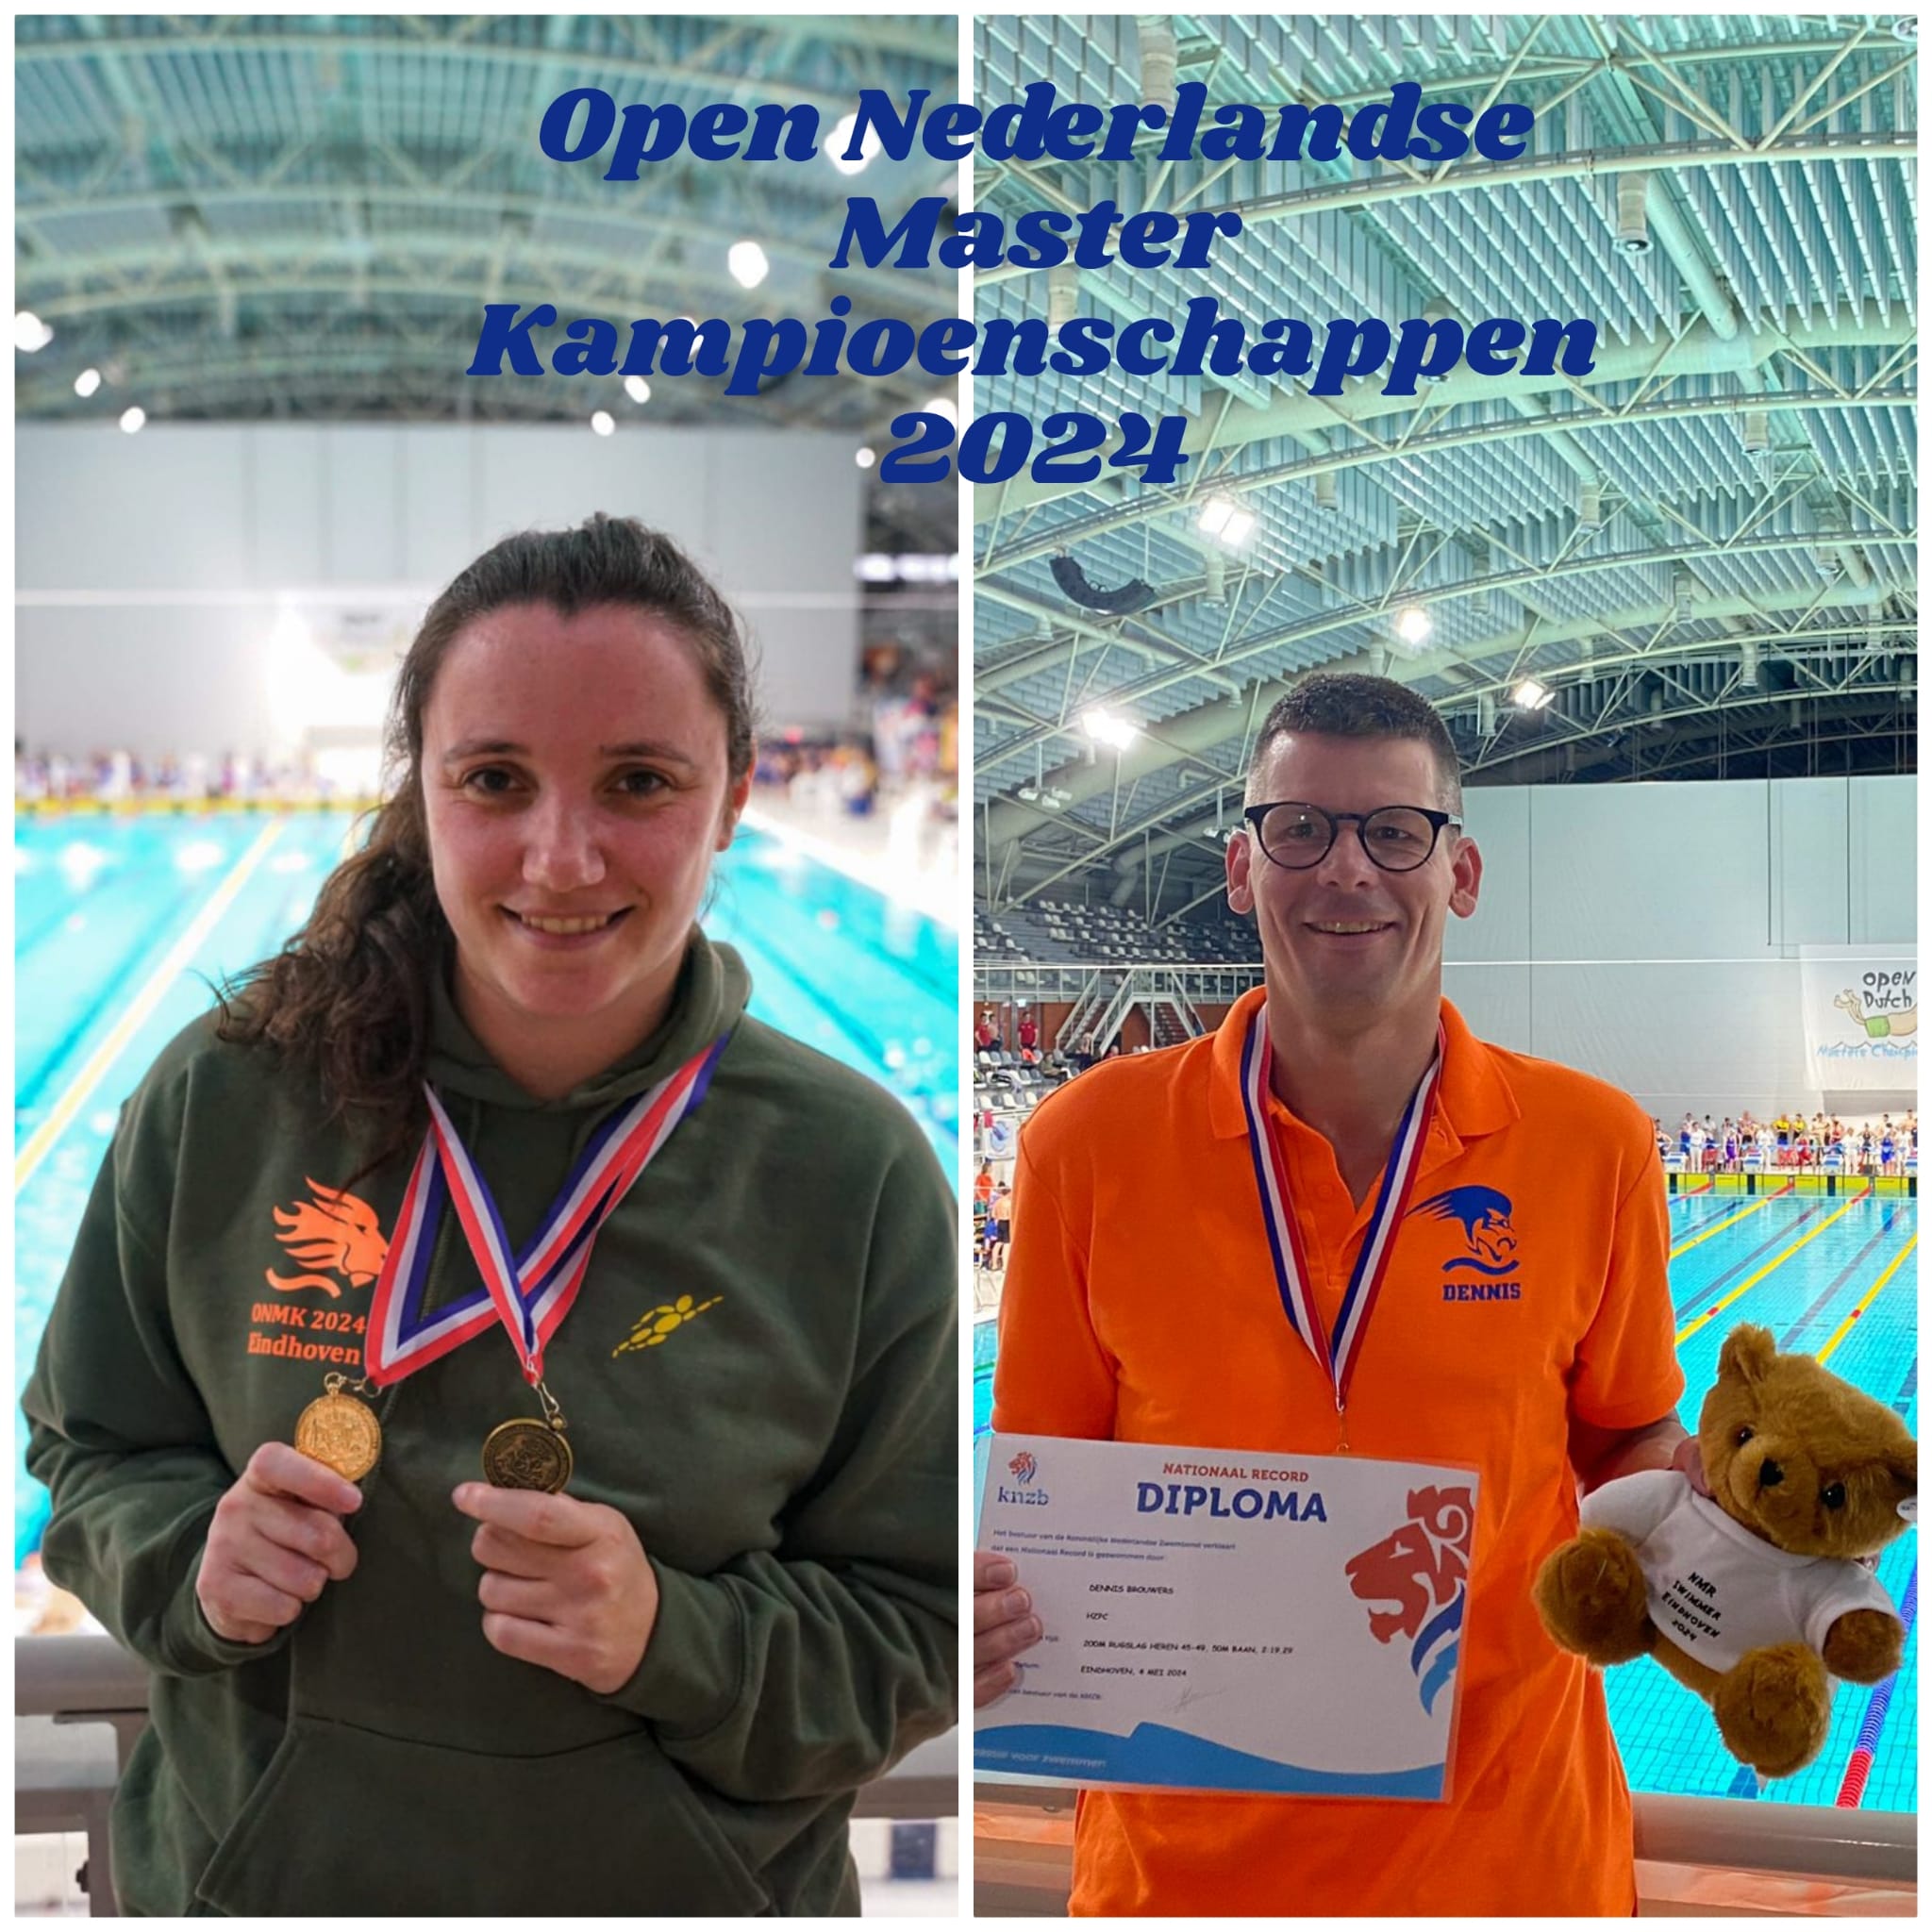 HZPC vertegenwoordigd bij Open Nederlandse Masterkampioenschappen in Eindhoven